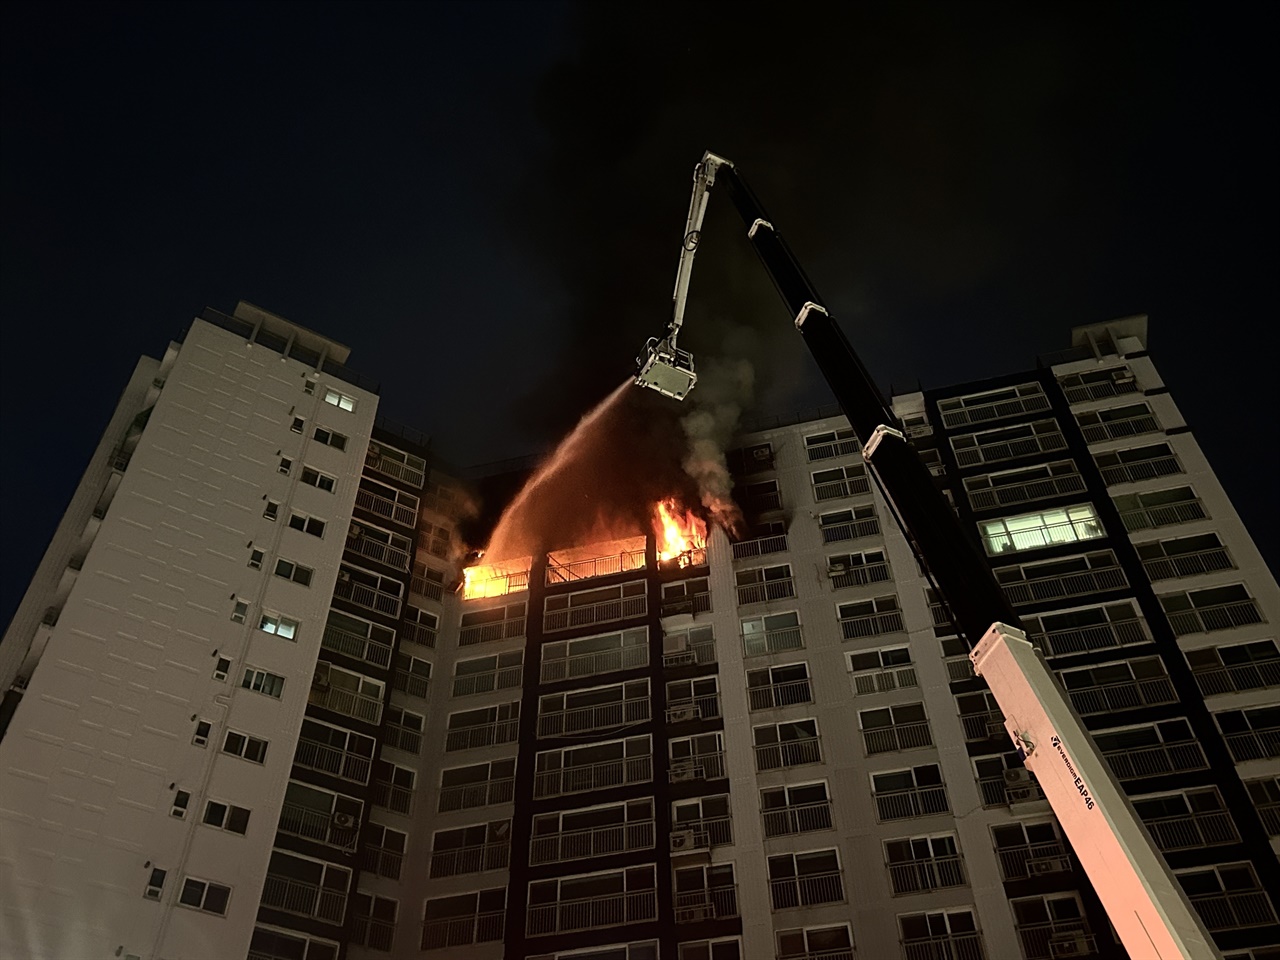 4일 오후 6시50분경 충남 홍성의 한 고층 아파트 13층에서 화재가 발생했다.